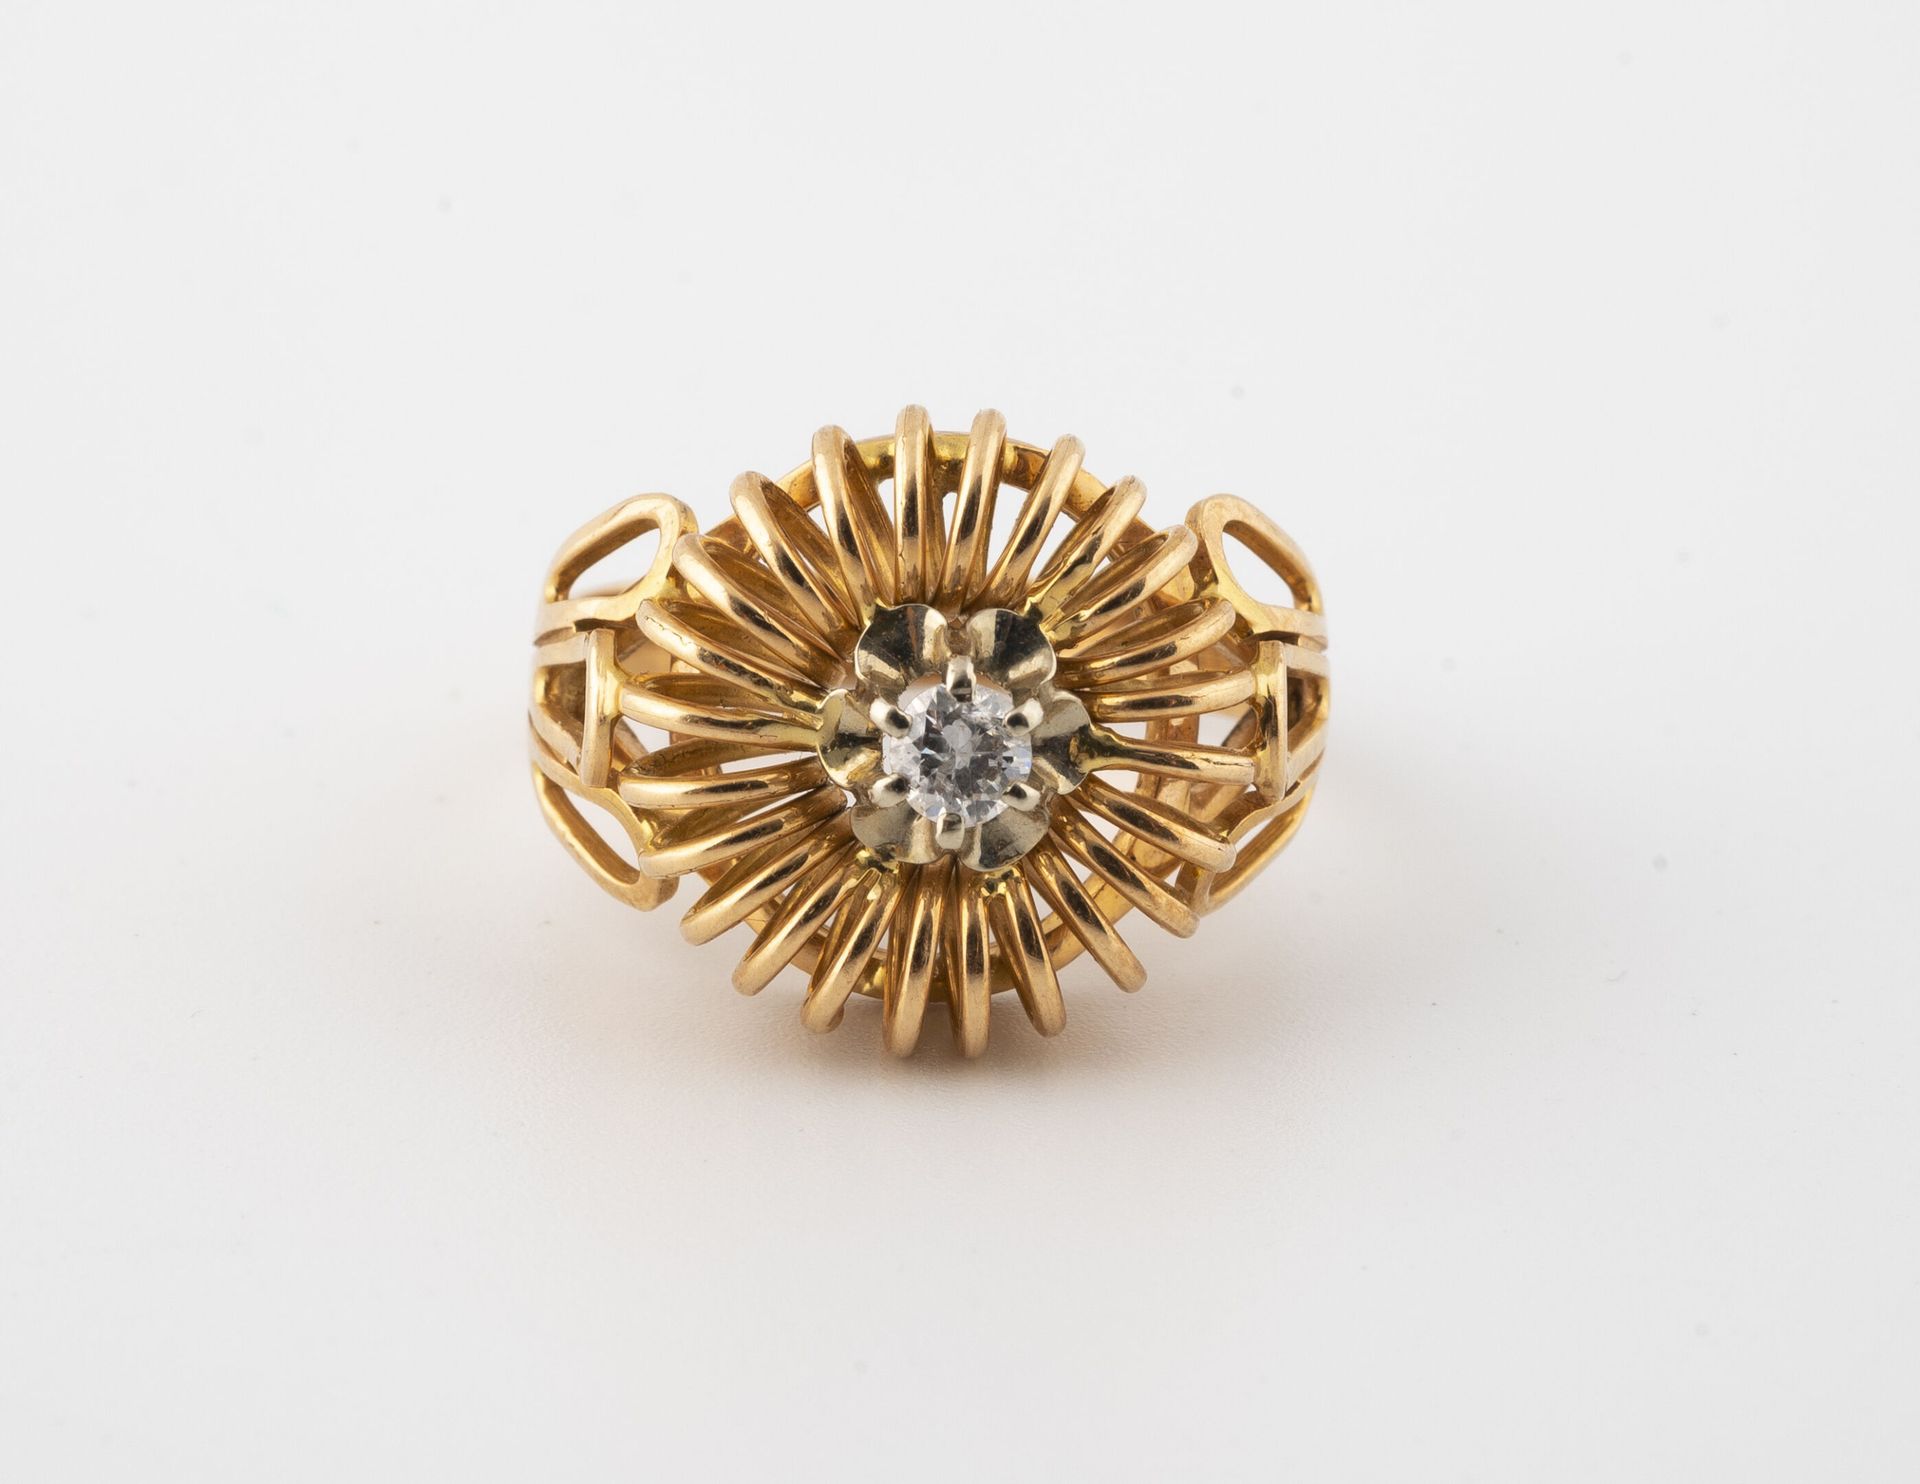 Null 圆形黄金（750）花丝戒指，以爪式镶嵌的小型明亮式切割钻石为中心，呈螺旋形冠状。

毛重：5.1克 - 手指大小：53。

刮痕和破损。